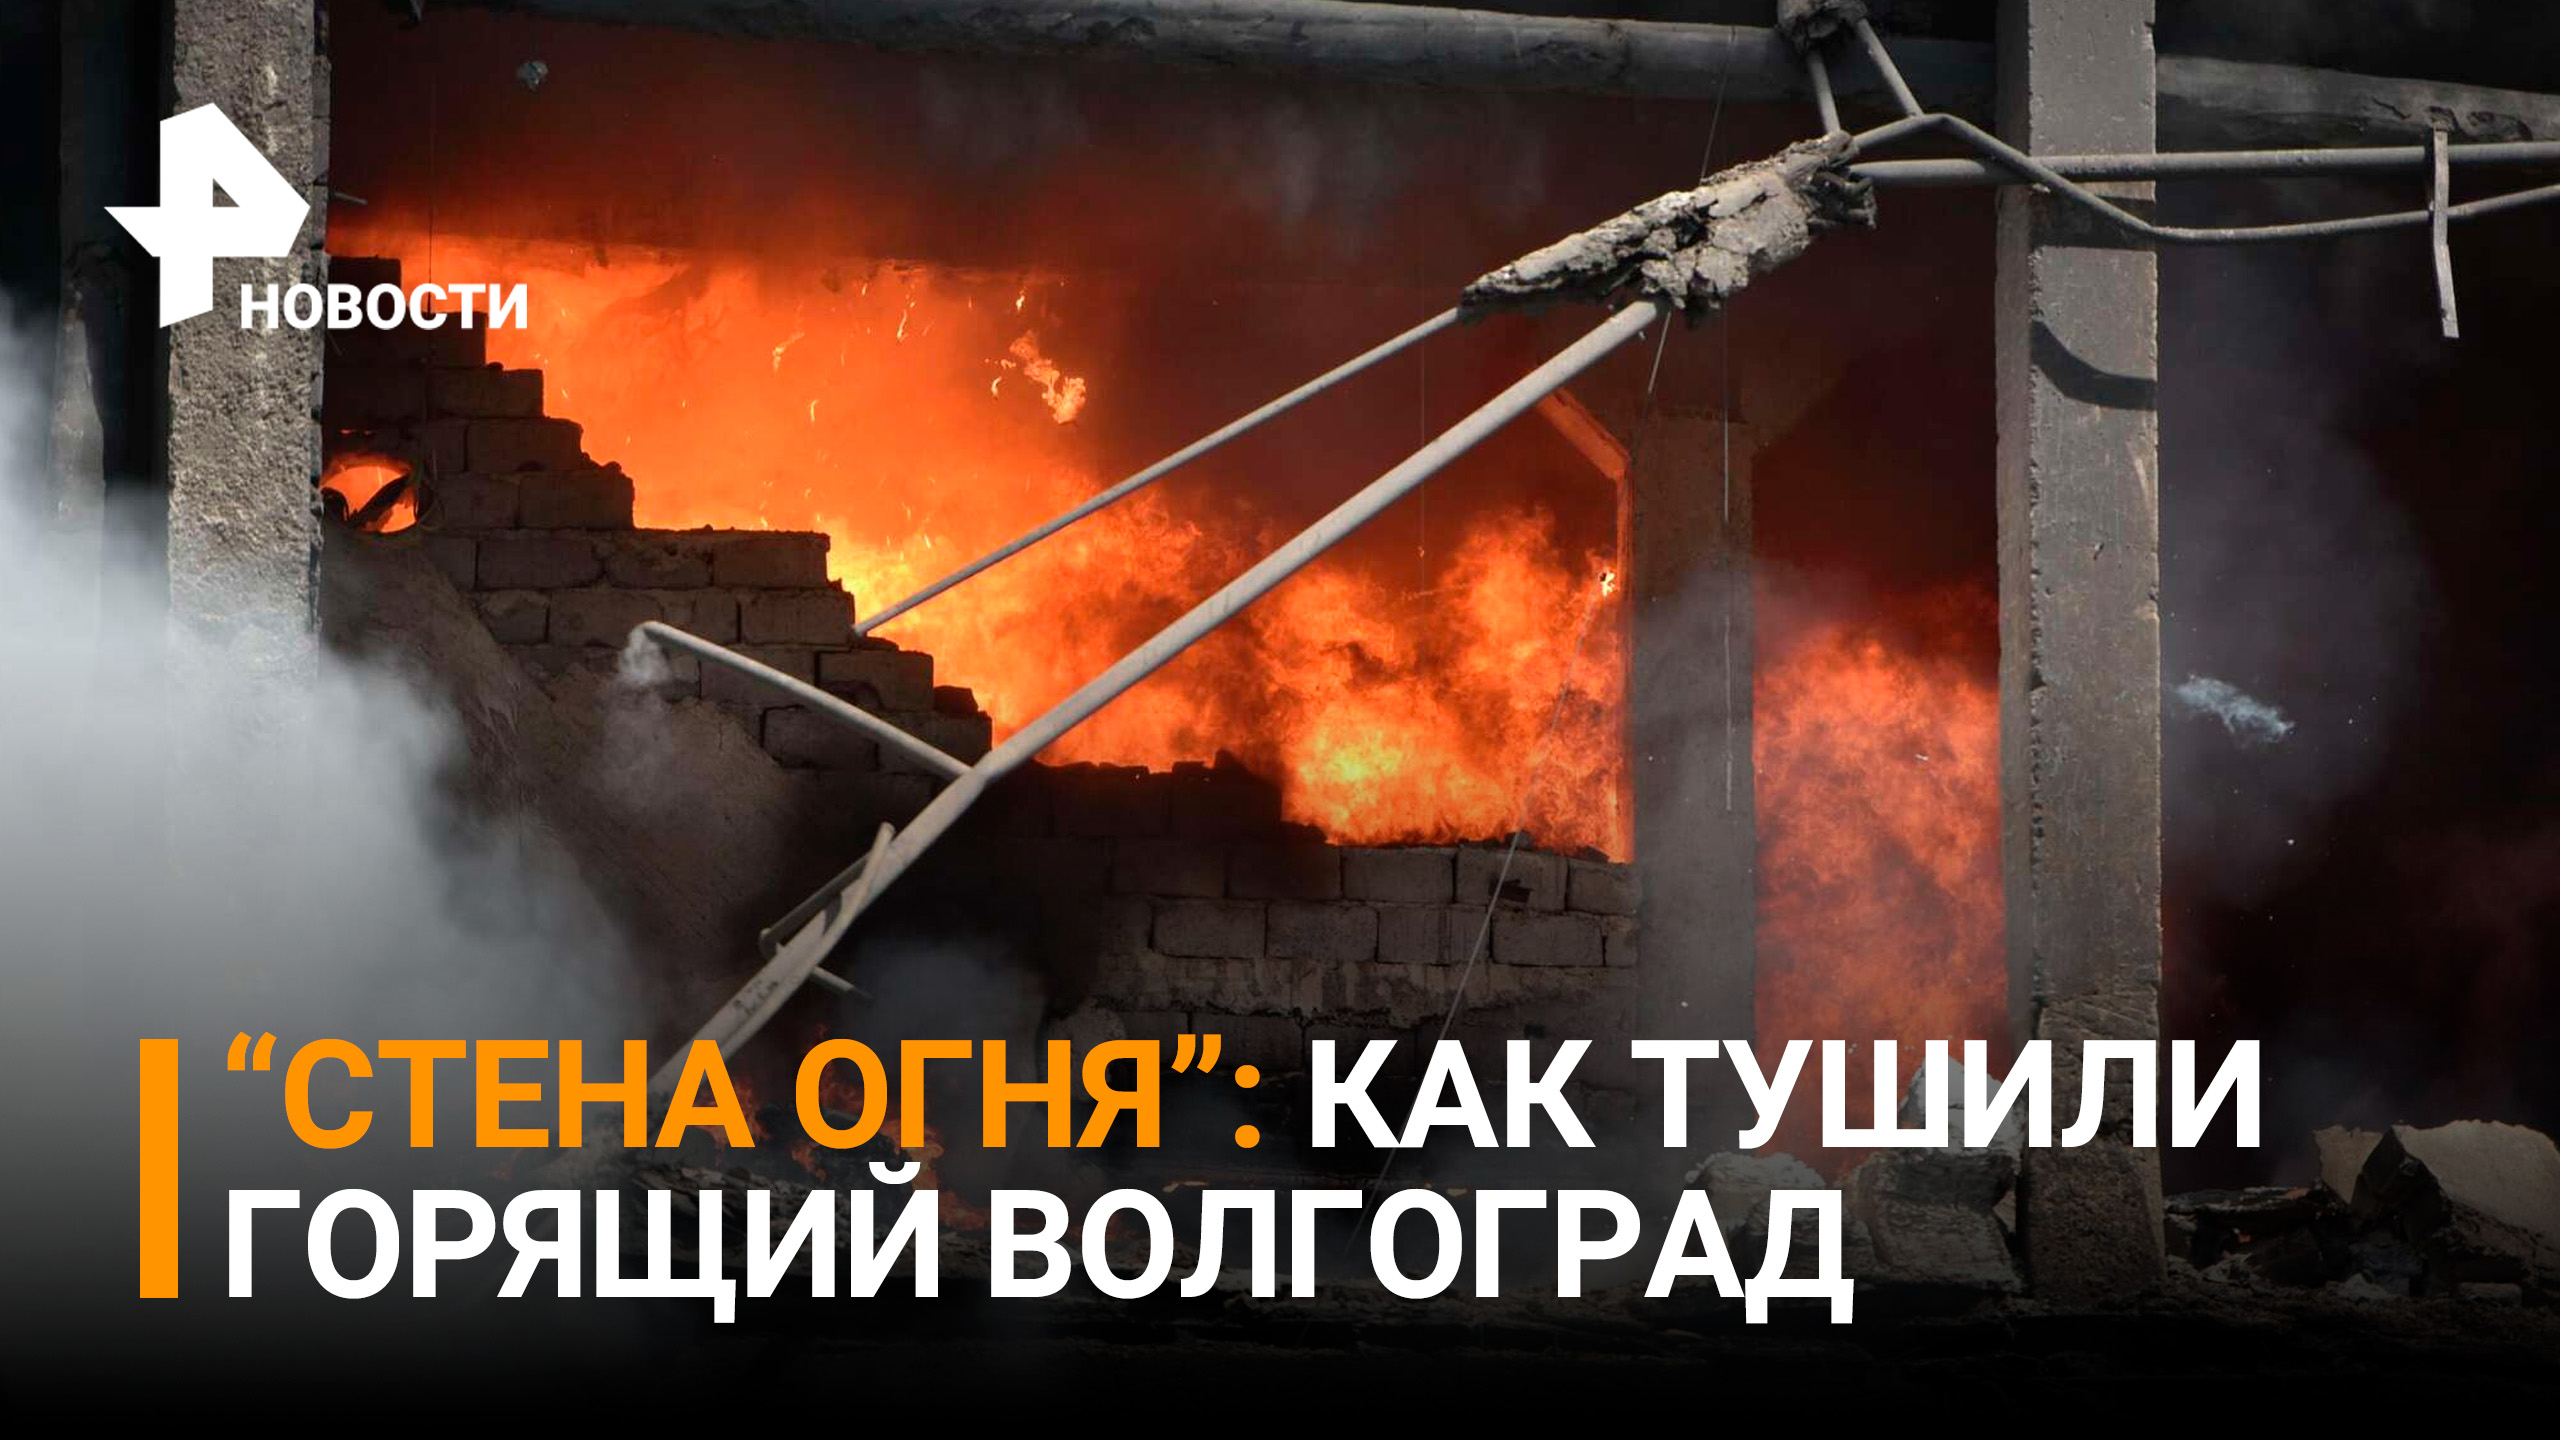 Огненное цунами: В Волгограде почти сгорел пригород / РЕН Новости